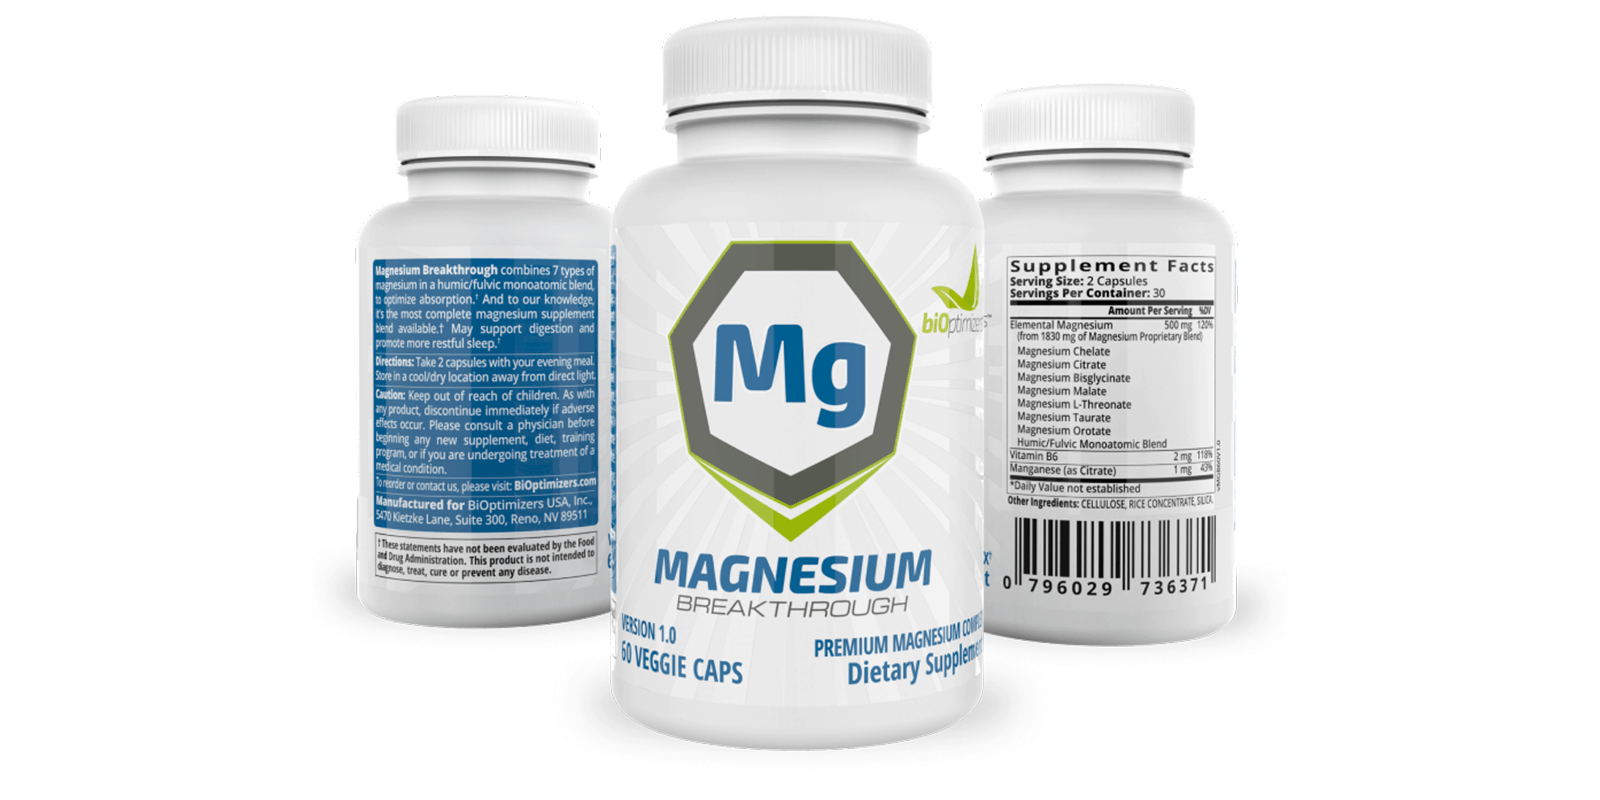 BiOptimizers Magnesium Breakthrough dosage